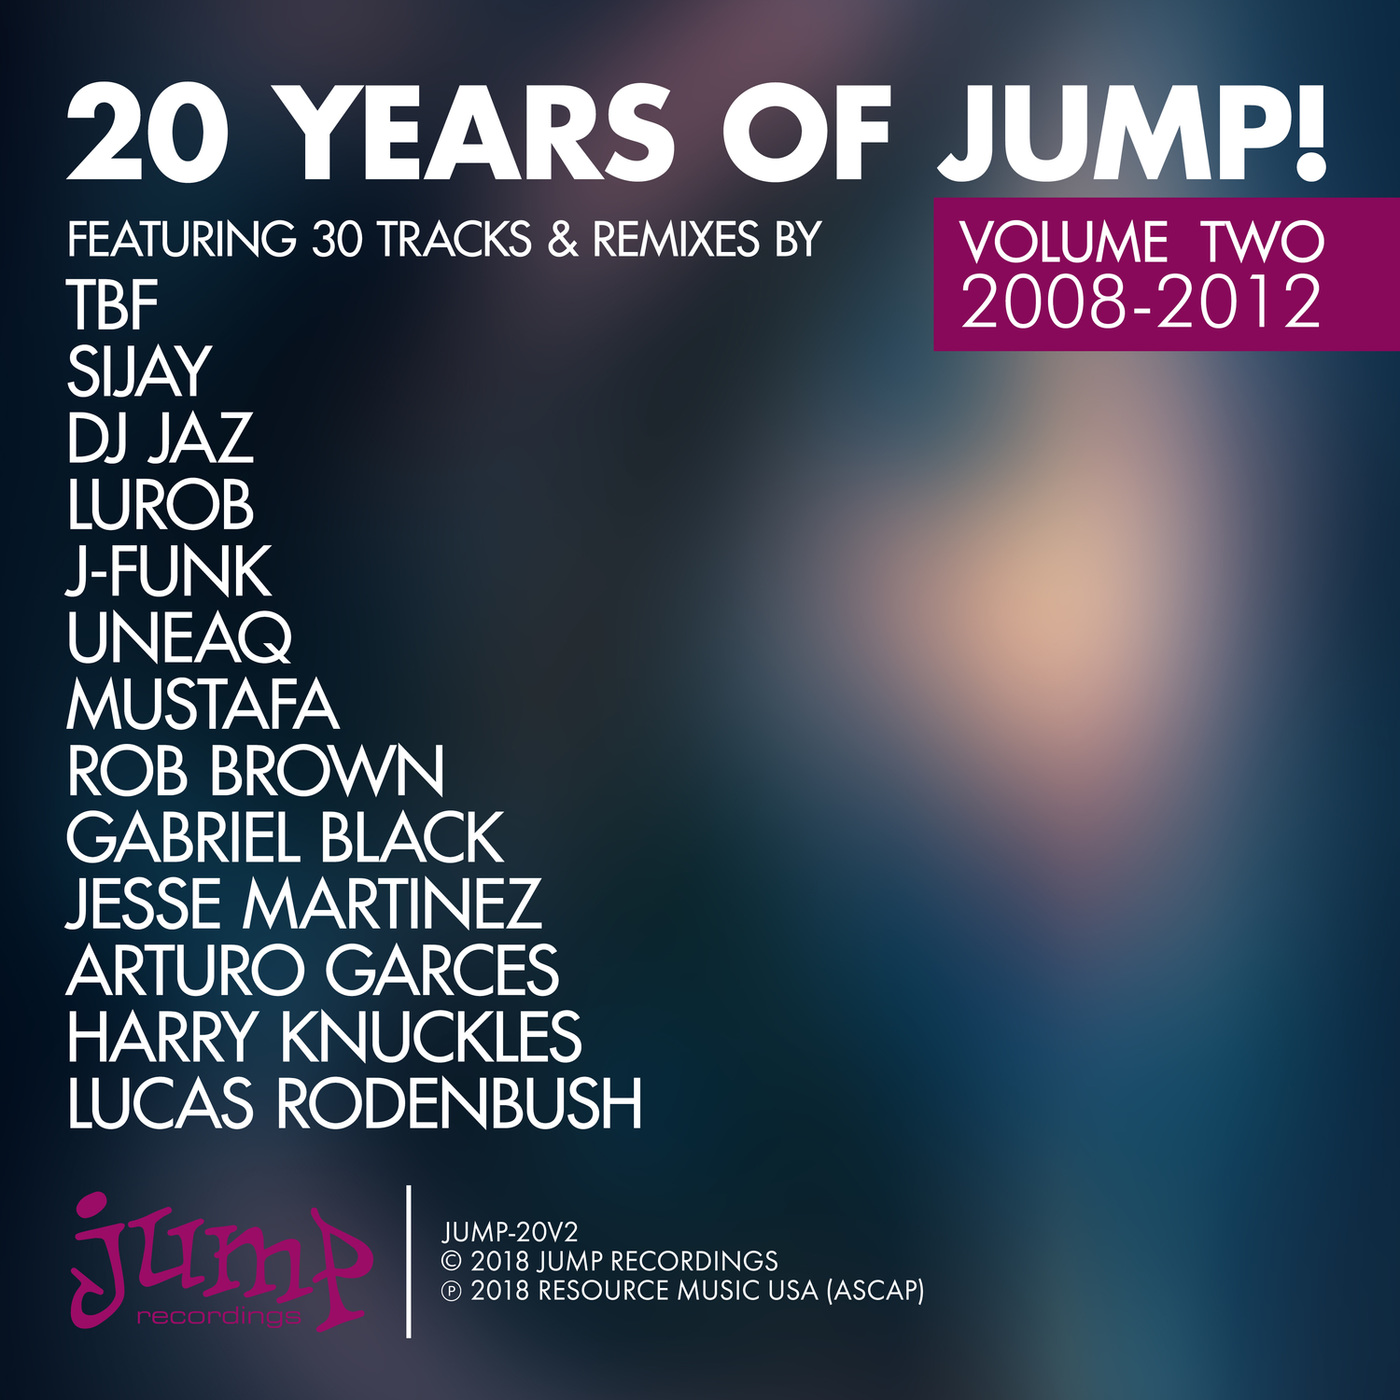 VA - 20 Years of Jump!, Vol. 2 / Jump Recordings